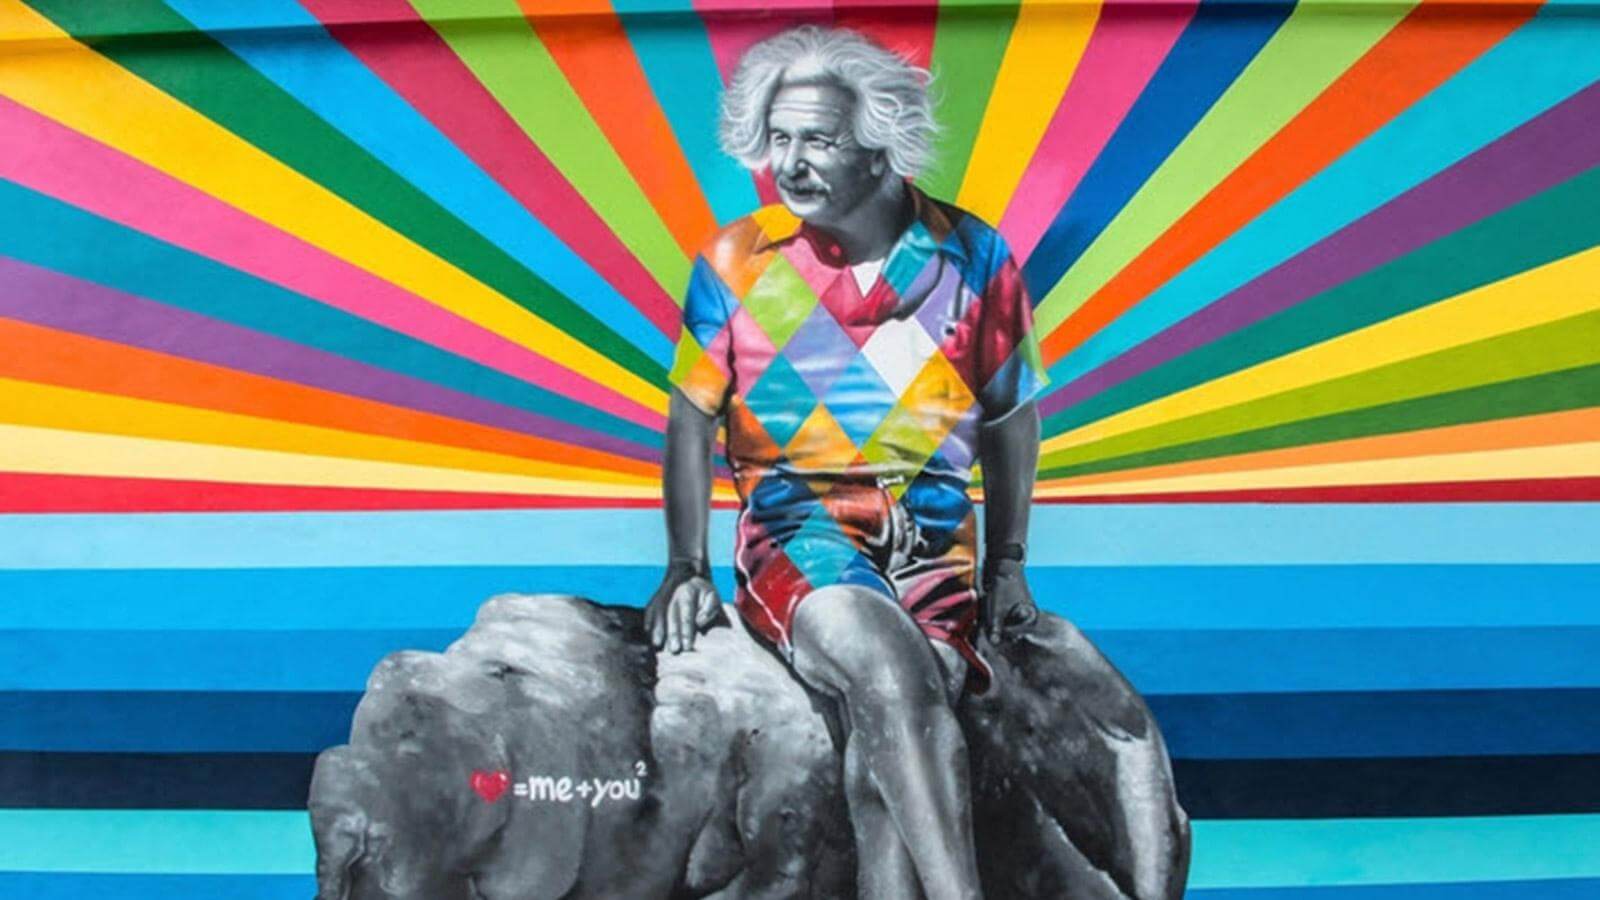 The Einstein Canvas Mural Selfie